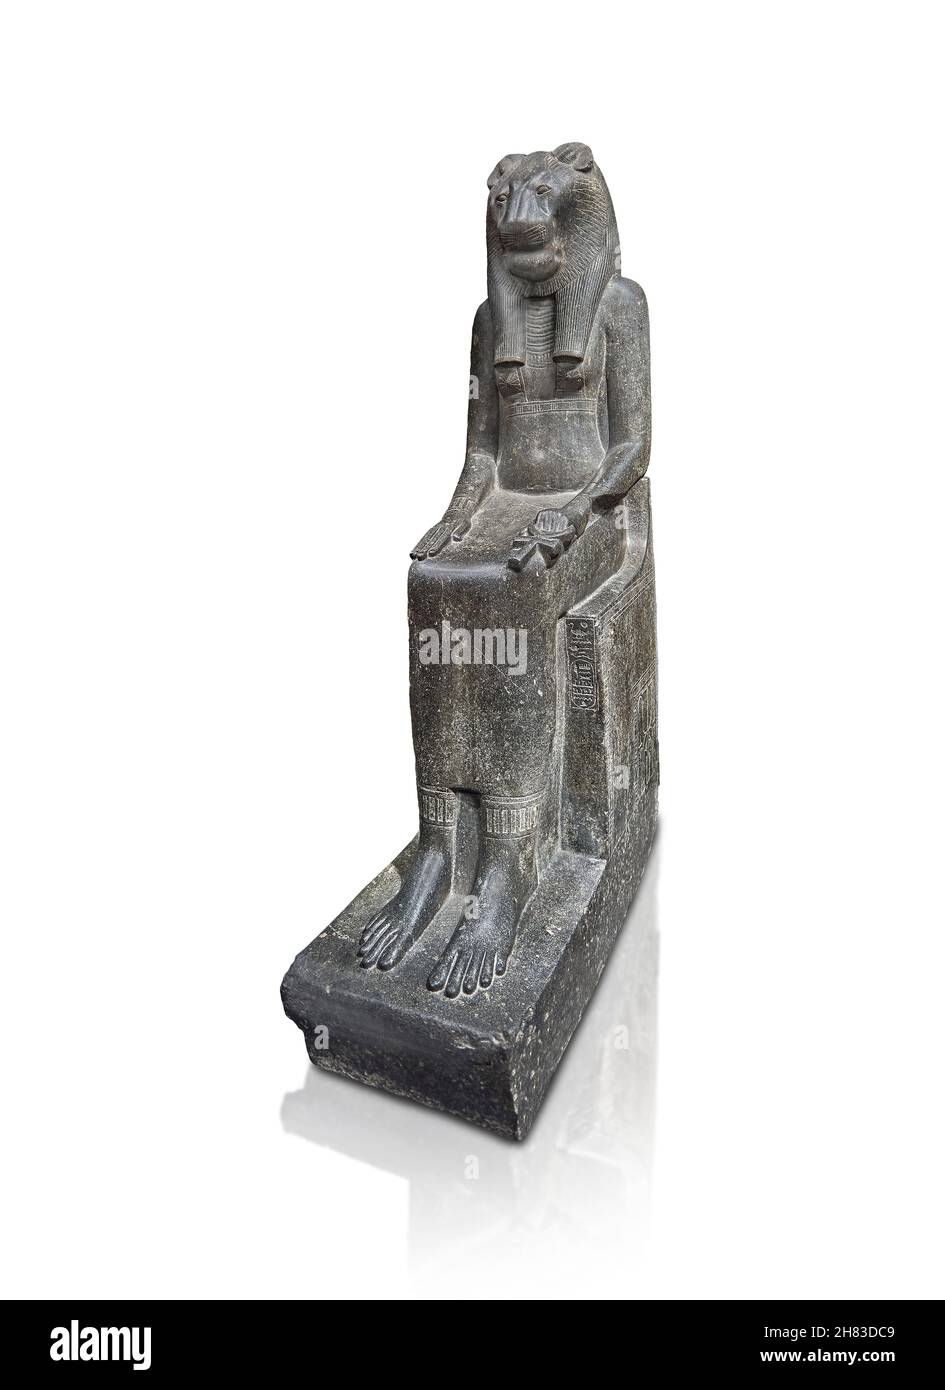 Alte ägyptische sitzende Statue der Göttin Sakhmet, 1410- 1372 BC 16th Dynastie, Mut Tempel Karnak. Kunsthistorisches Museum Wien Inv. AS 78. Dio Stockfoto